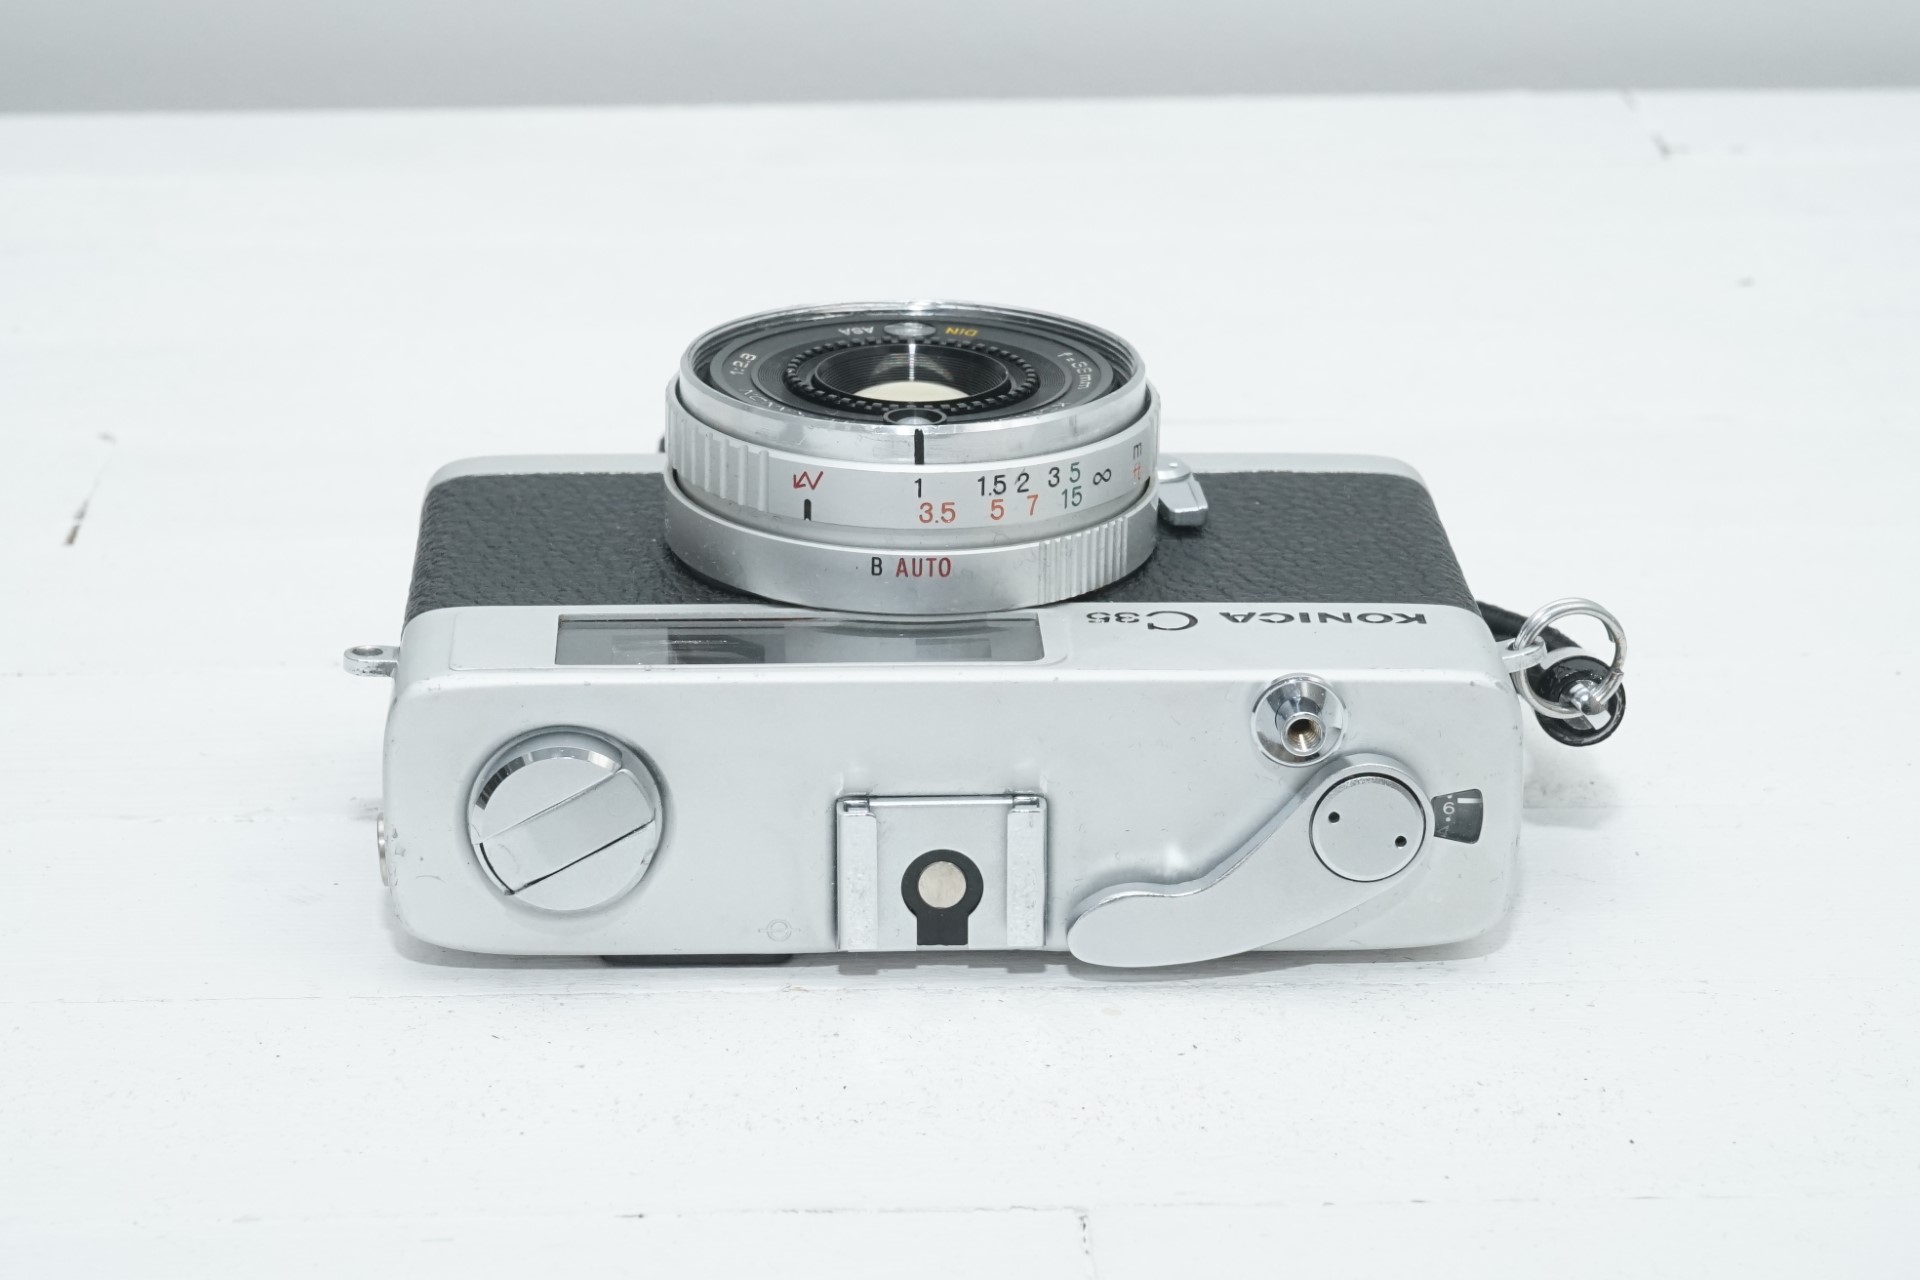 カメラ フィルムカメラ 1点モノ フィルムカメラ」コニカ C35 FD 本革 リメイク ブルーグリーン 